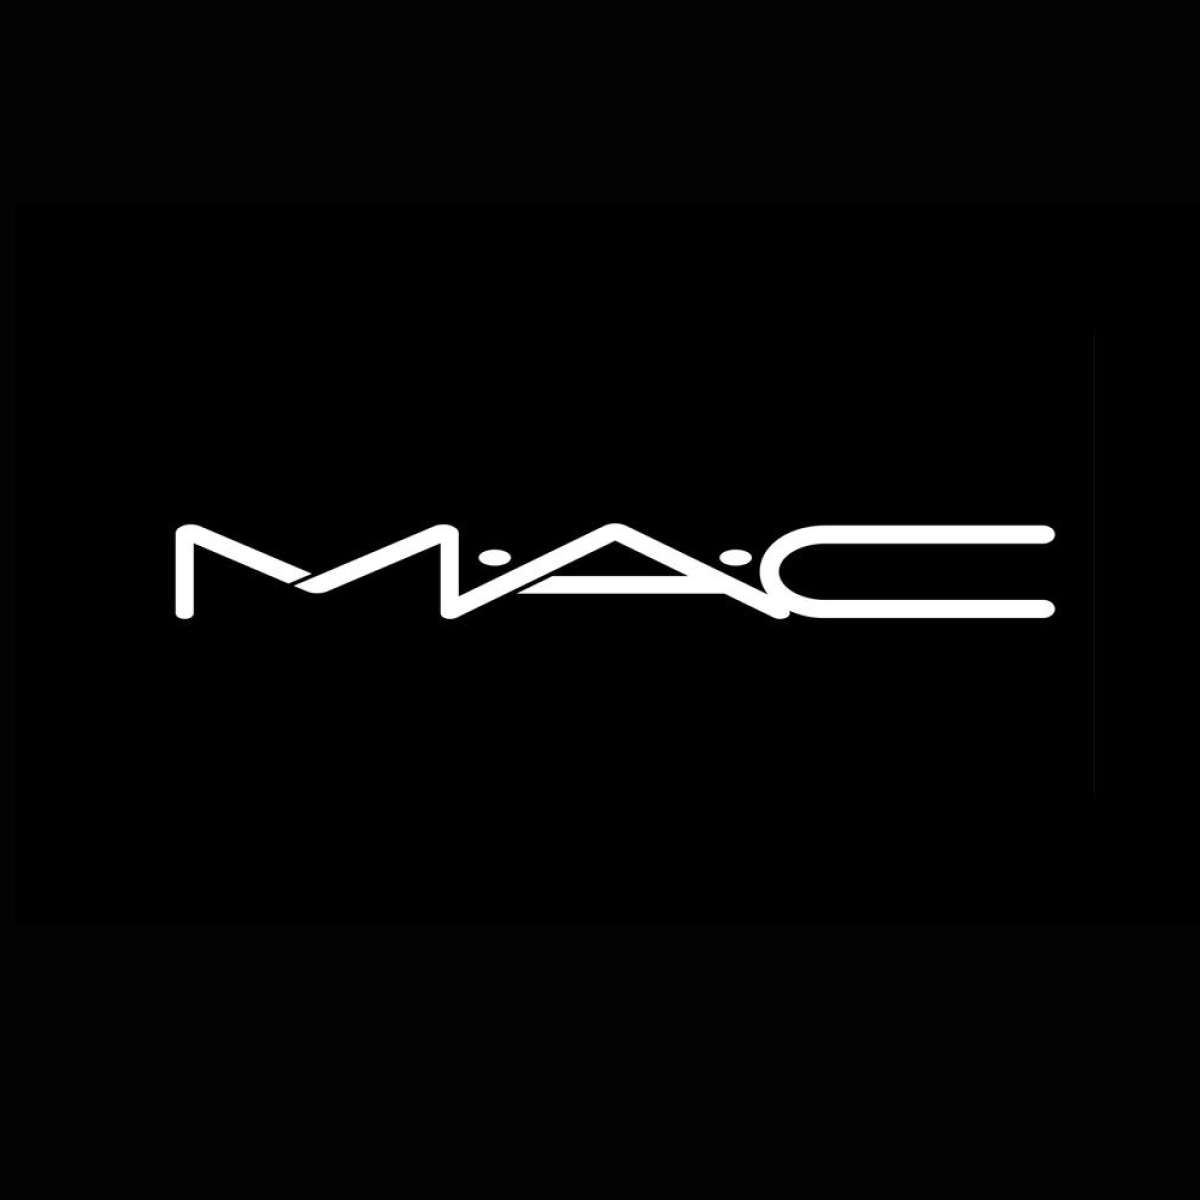 MAC, Next Galleria Malls